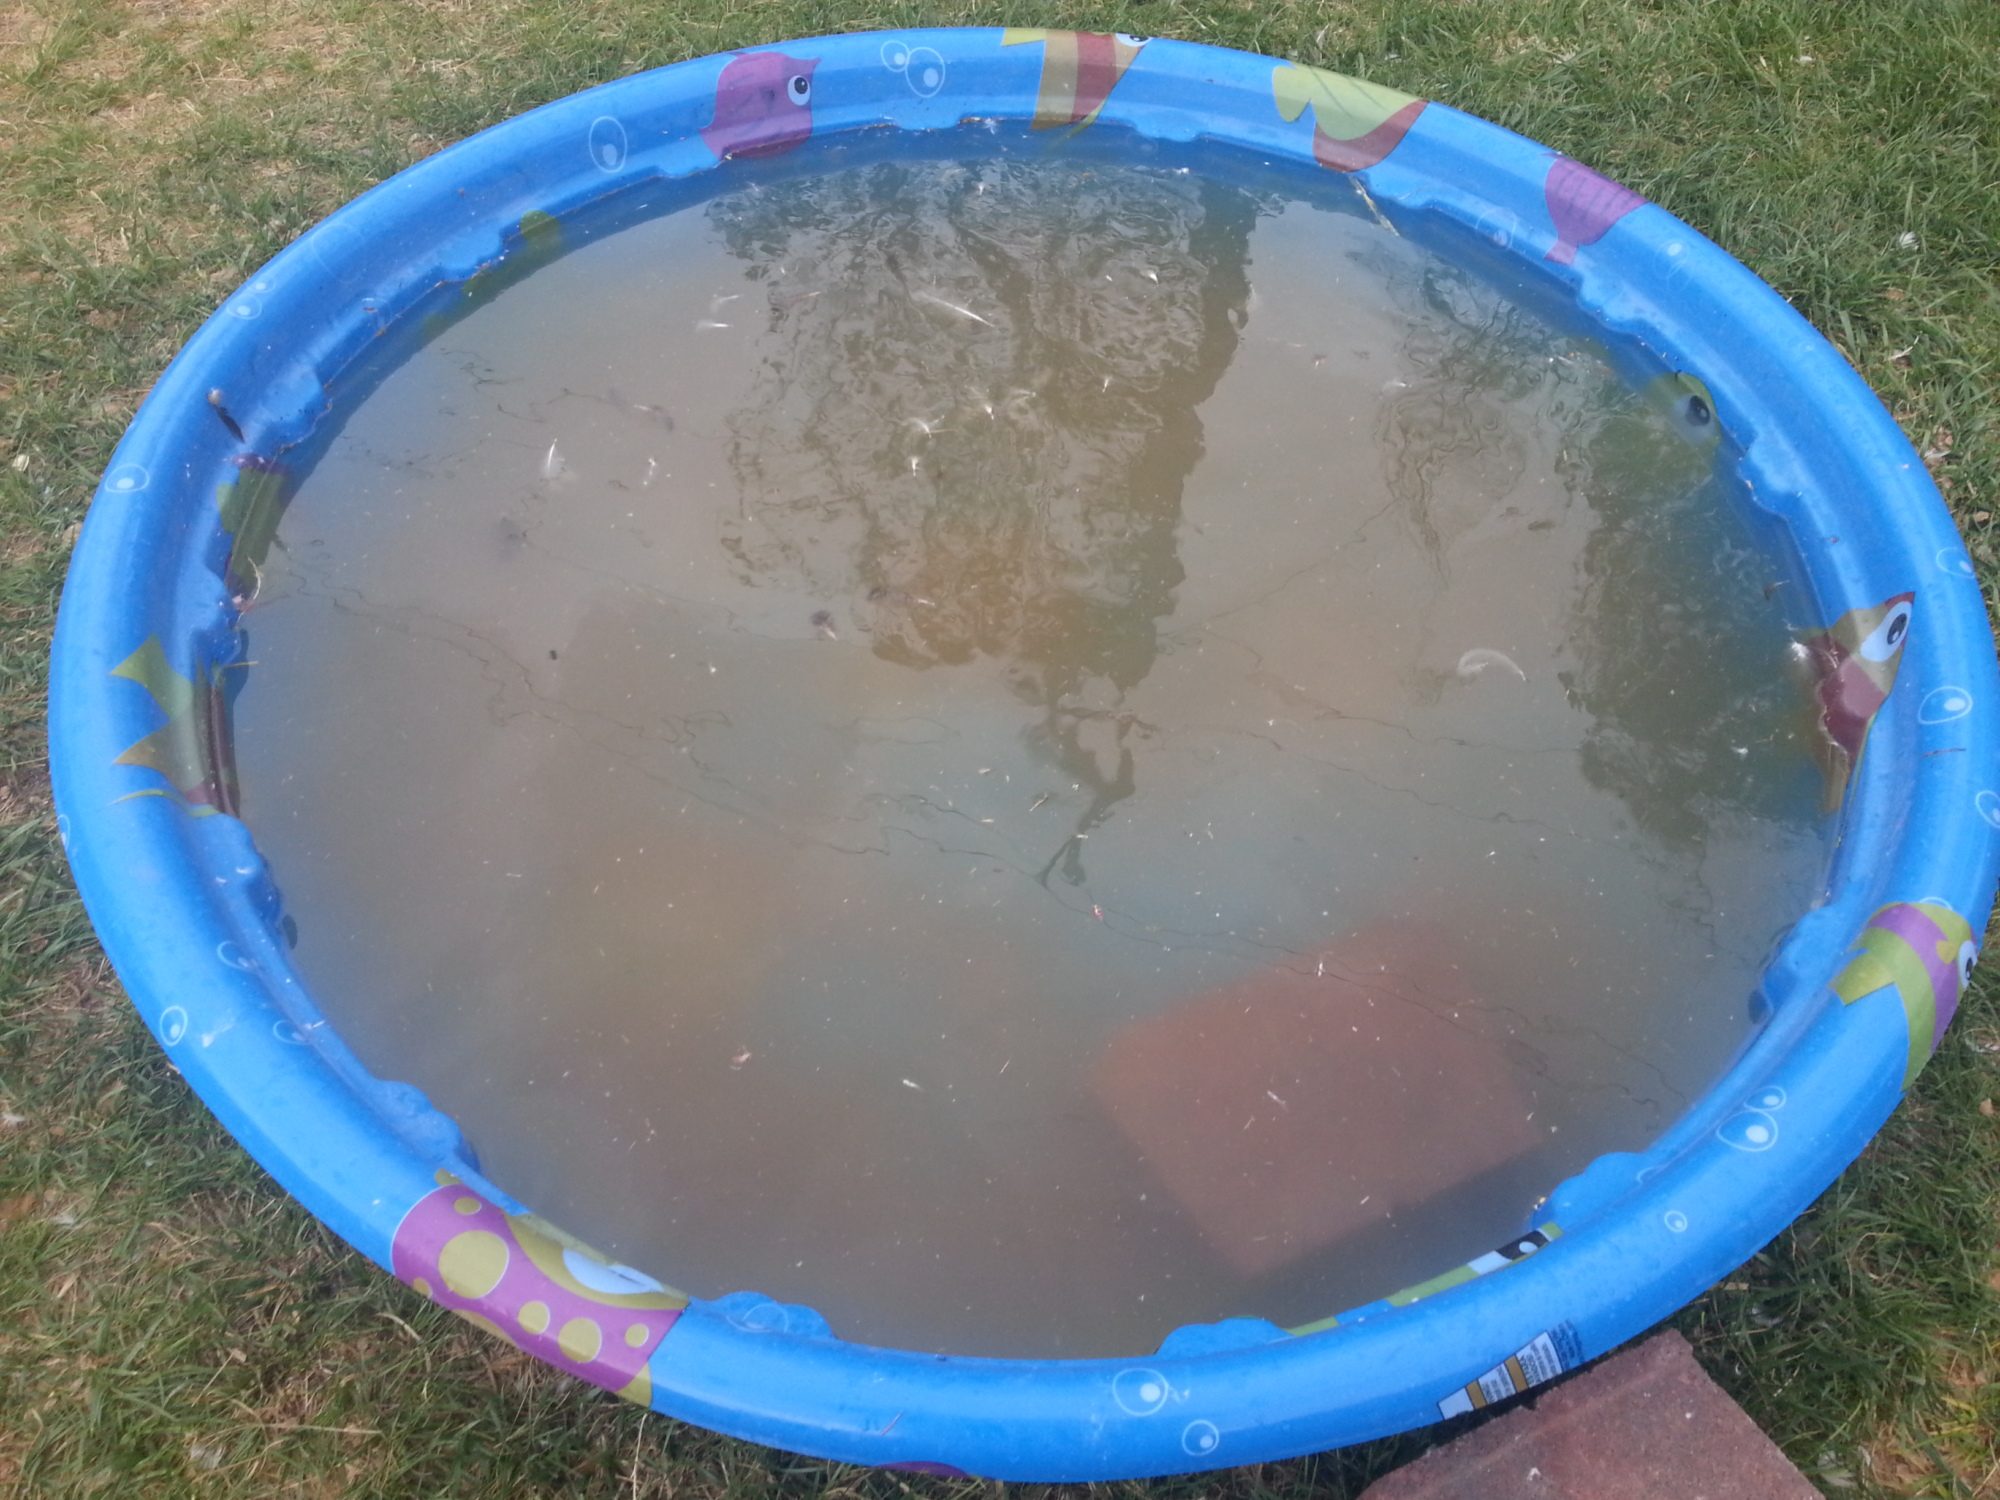 a dirty kiddie pool